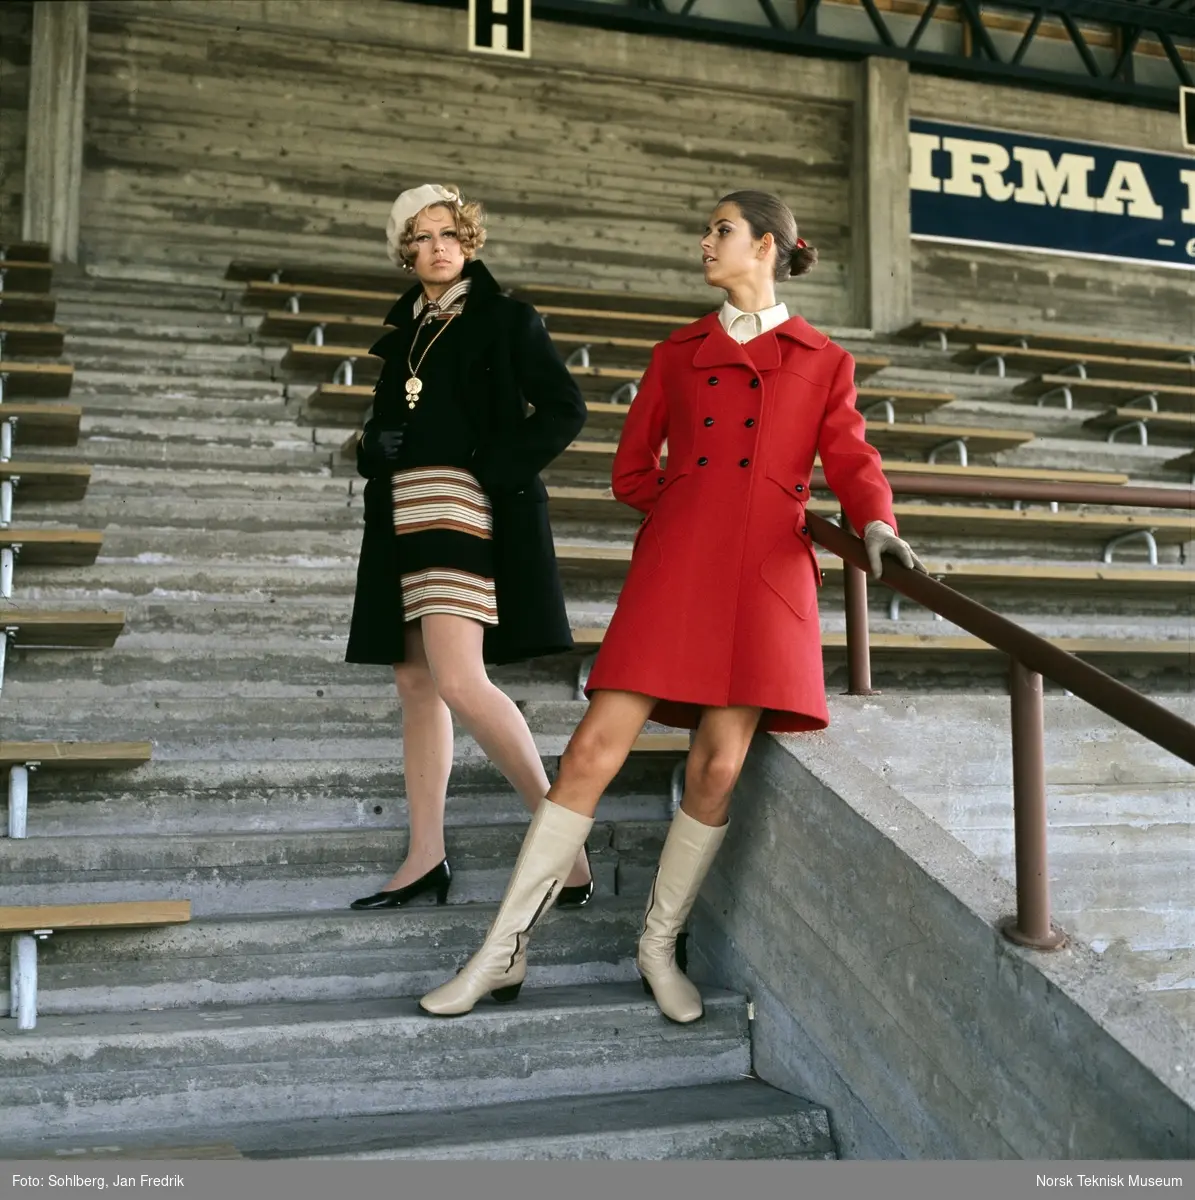 Motebilde i farger. To kvinnelige modeller. Modellen til venstre i mørk kåpe over stripete kjole, modellen til høyre i rød kåpe. Poserer på tribune på idrettsplass. Motivet er en del av en serie der noen er publisert i ukebladet Det Nye 1969, nr. 38 med overskriften "Kåper i høst".